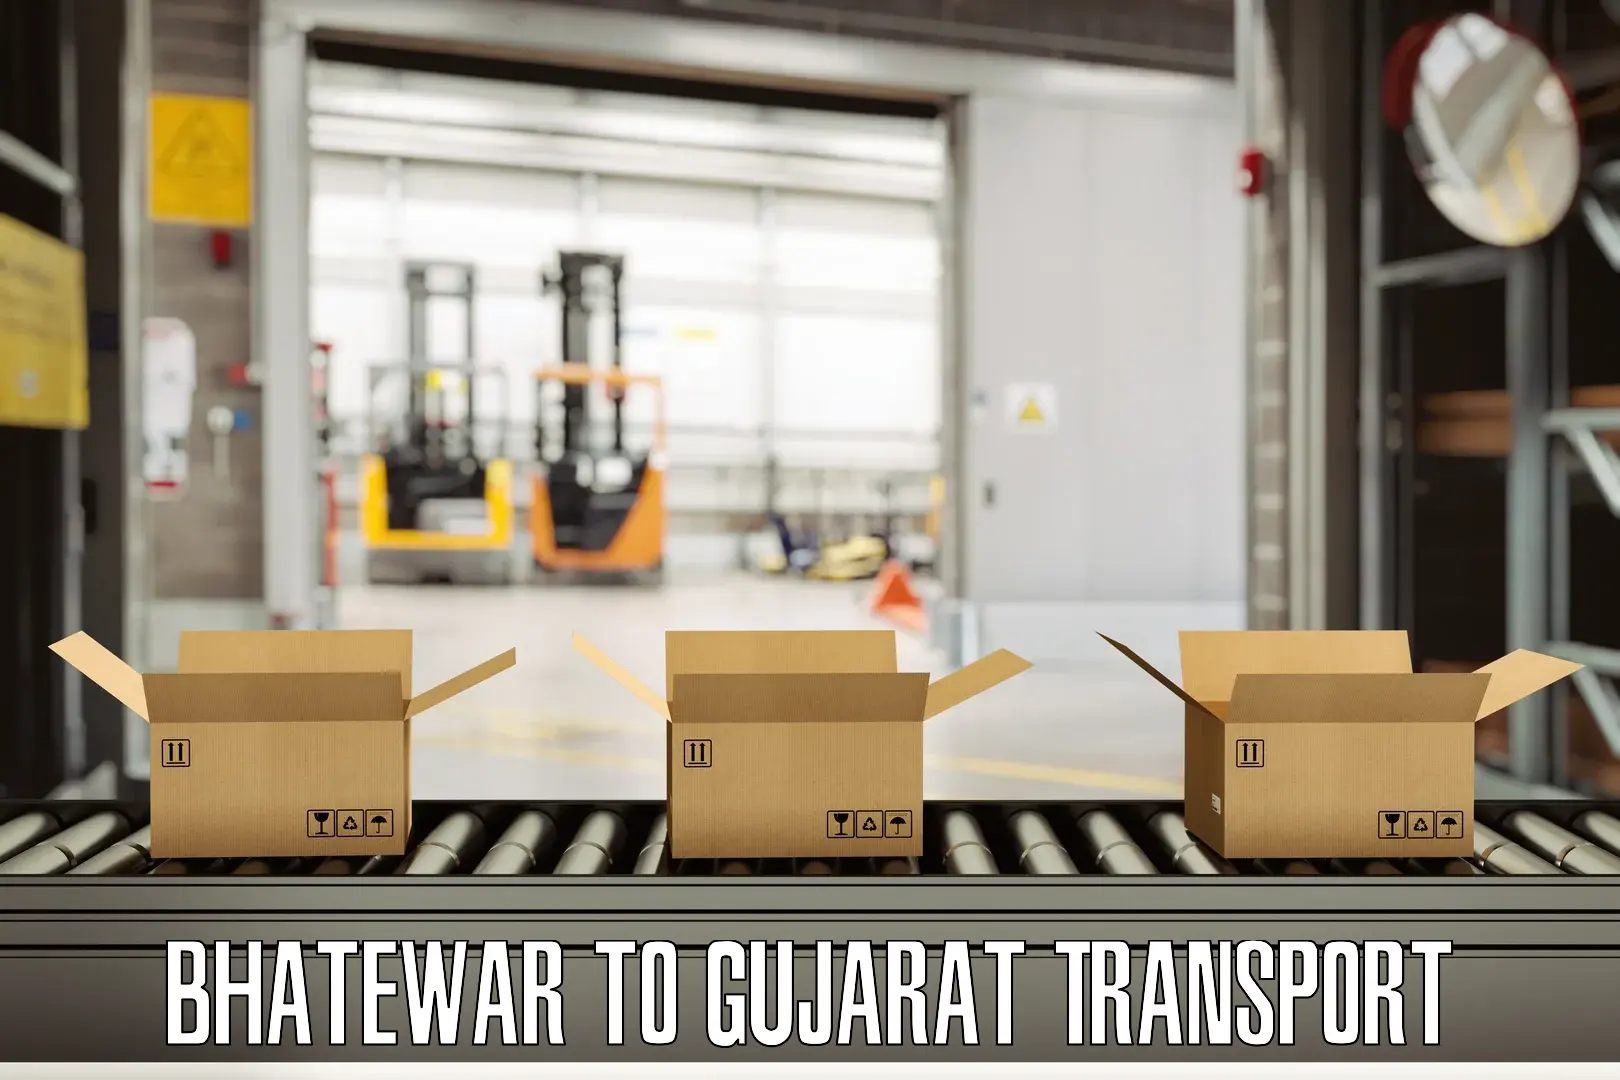 Door to door transport services Bhatewar to Gujarat